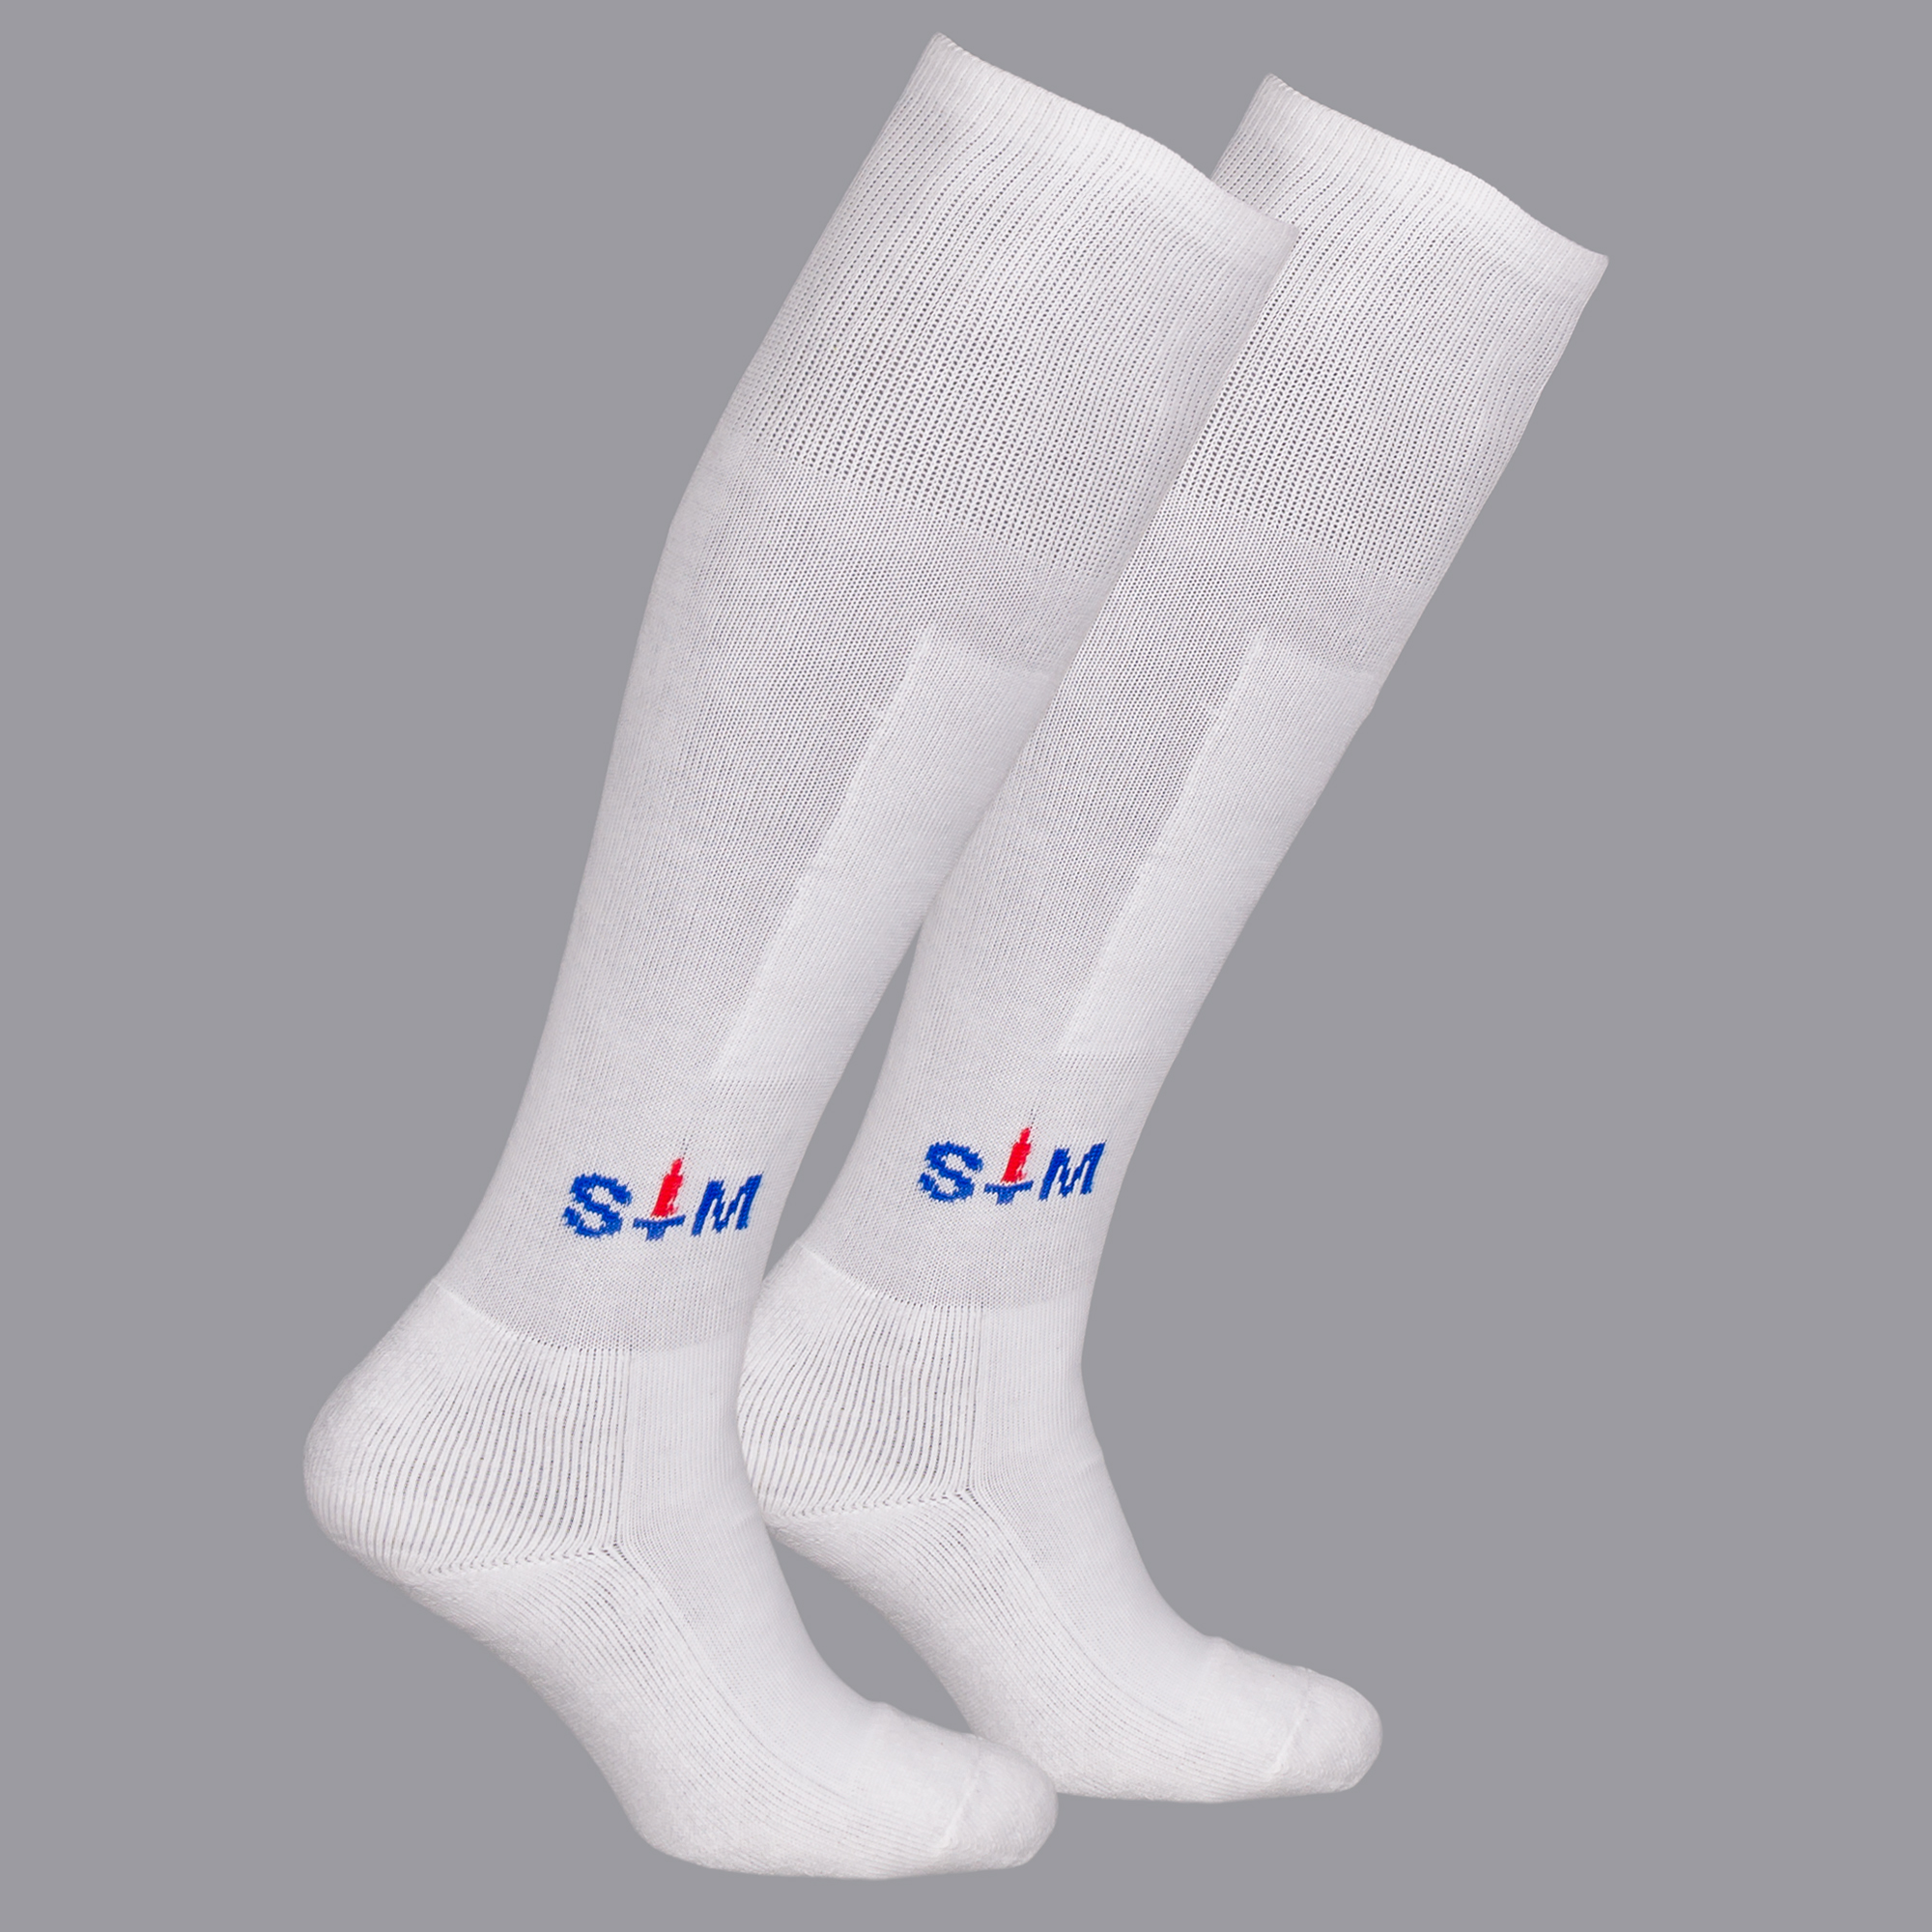 Leg warmers “StM” Pro